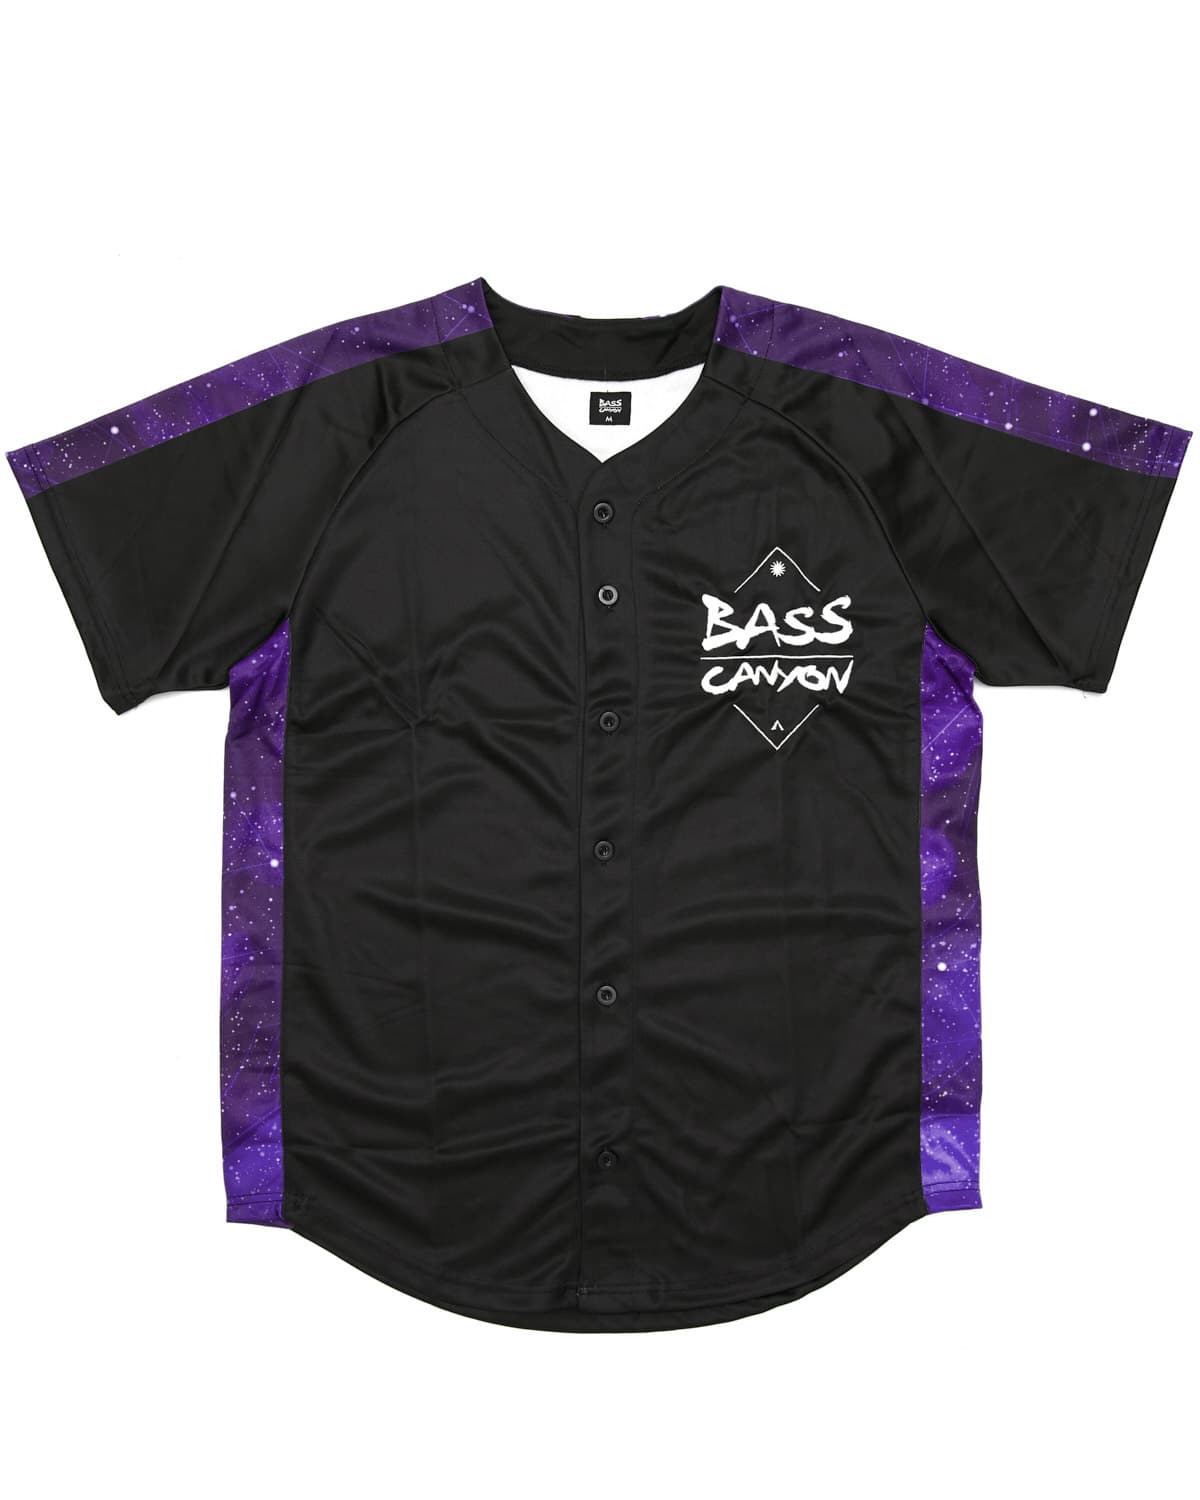 purple and black baseball jersey